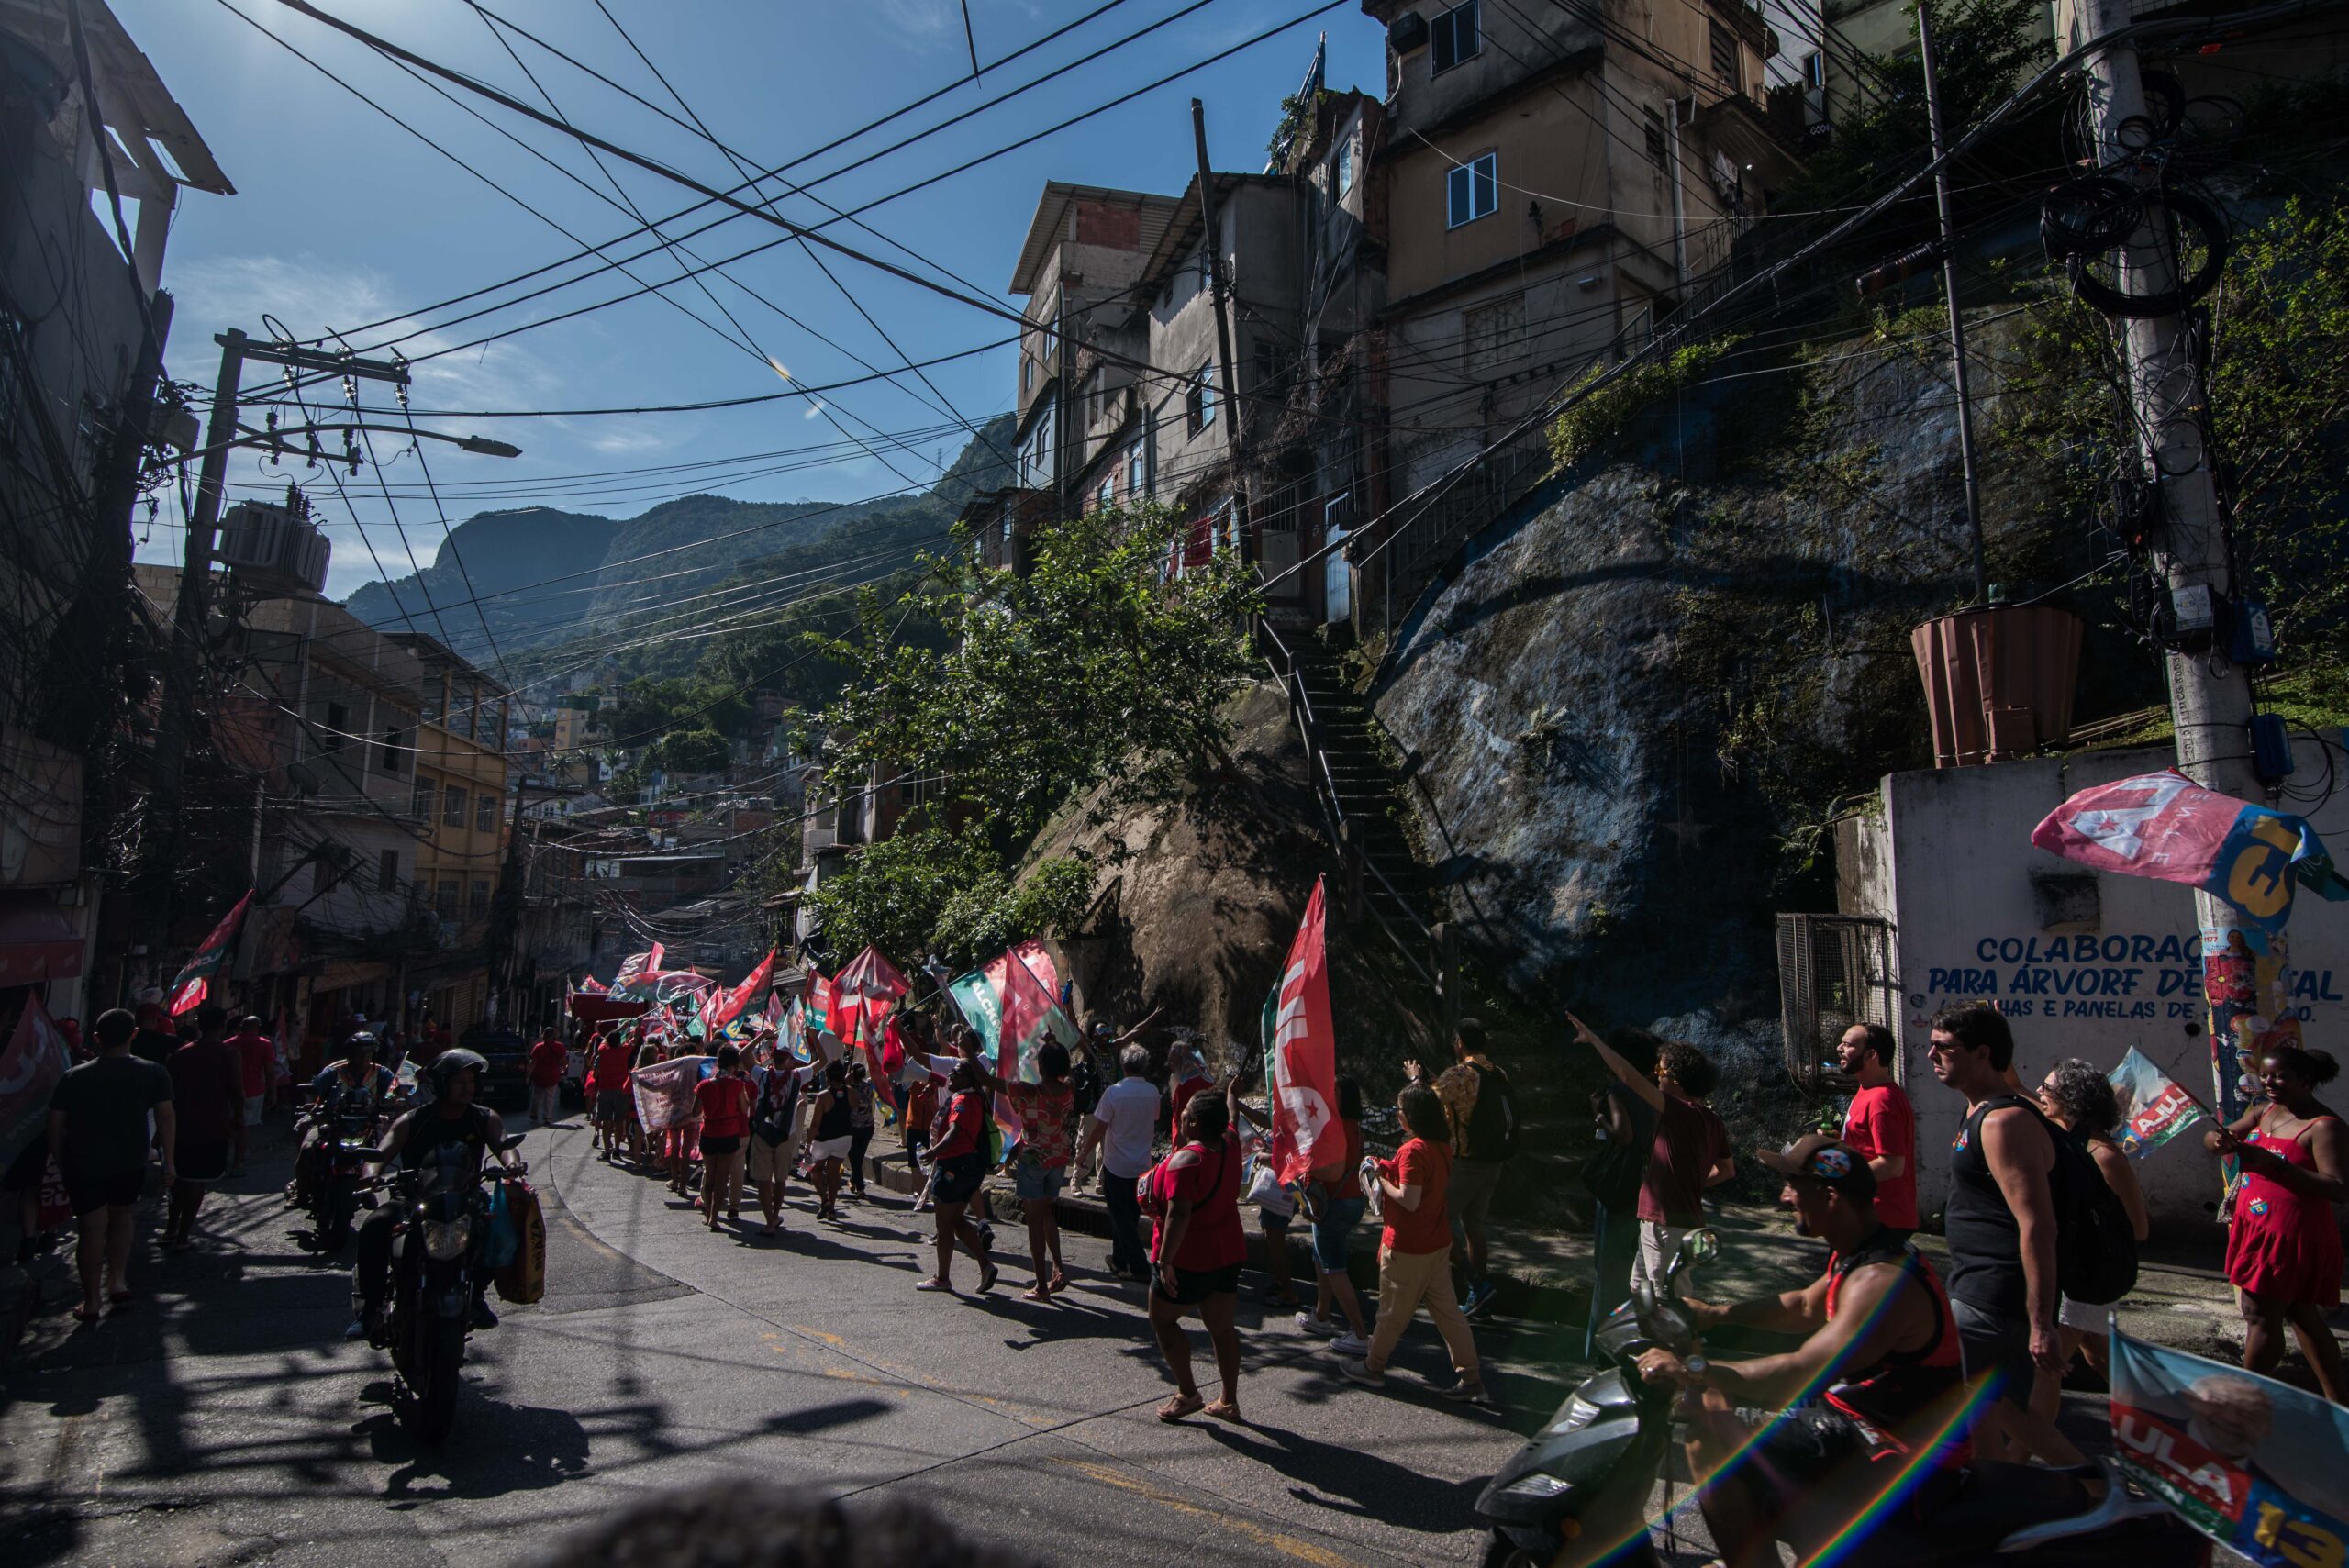 Caminhada Rocinha com Lula toma as ruas em apoio a Lula no segundo turno das eleições 2022. Foto: Bárbara Dias/RioOnWatch